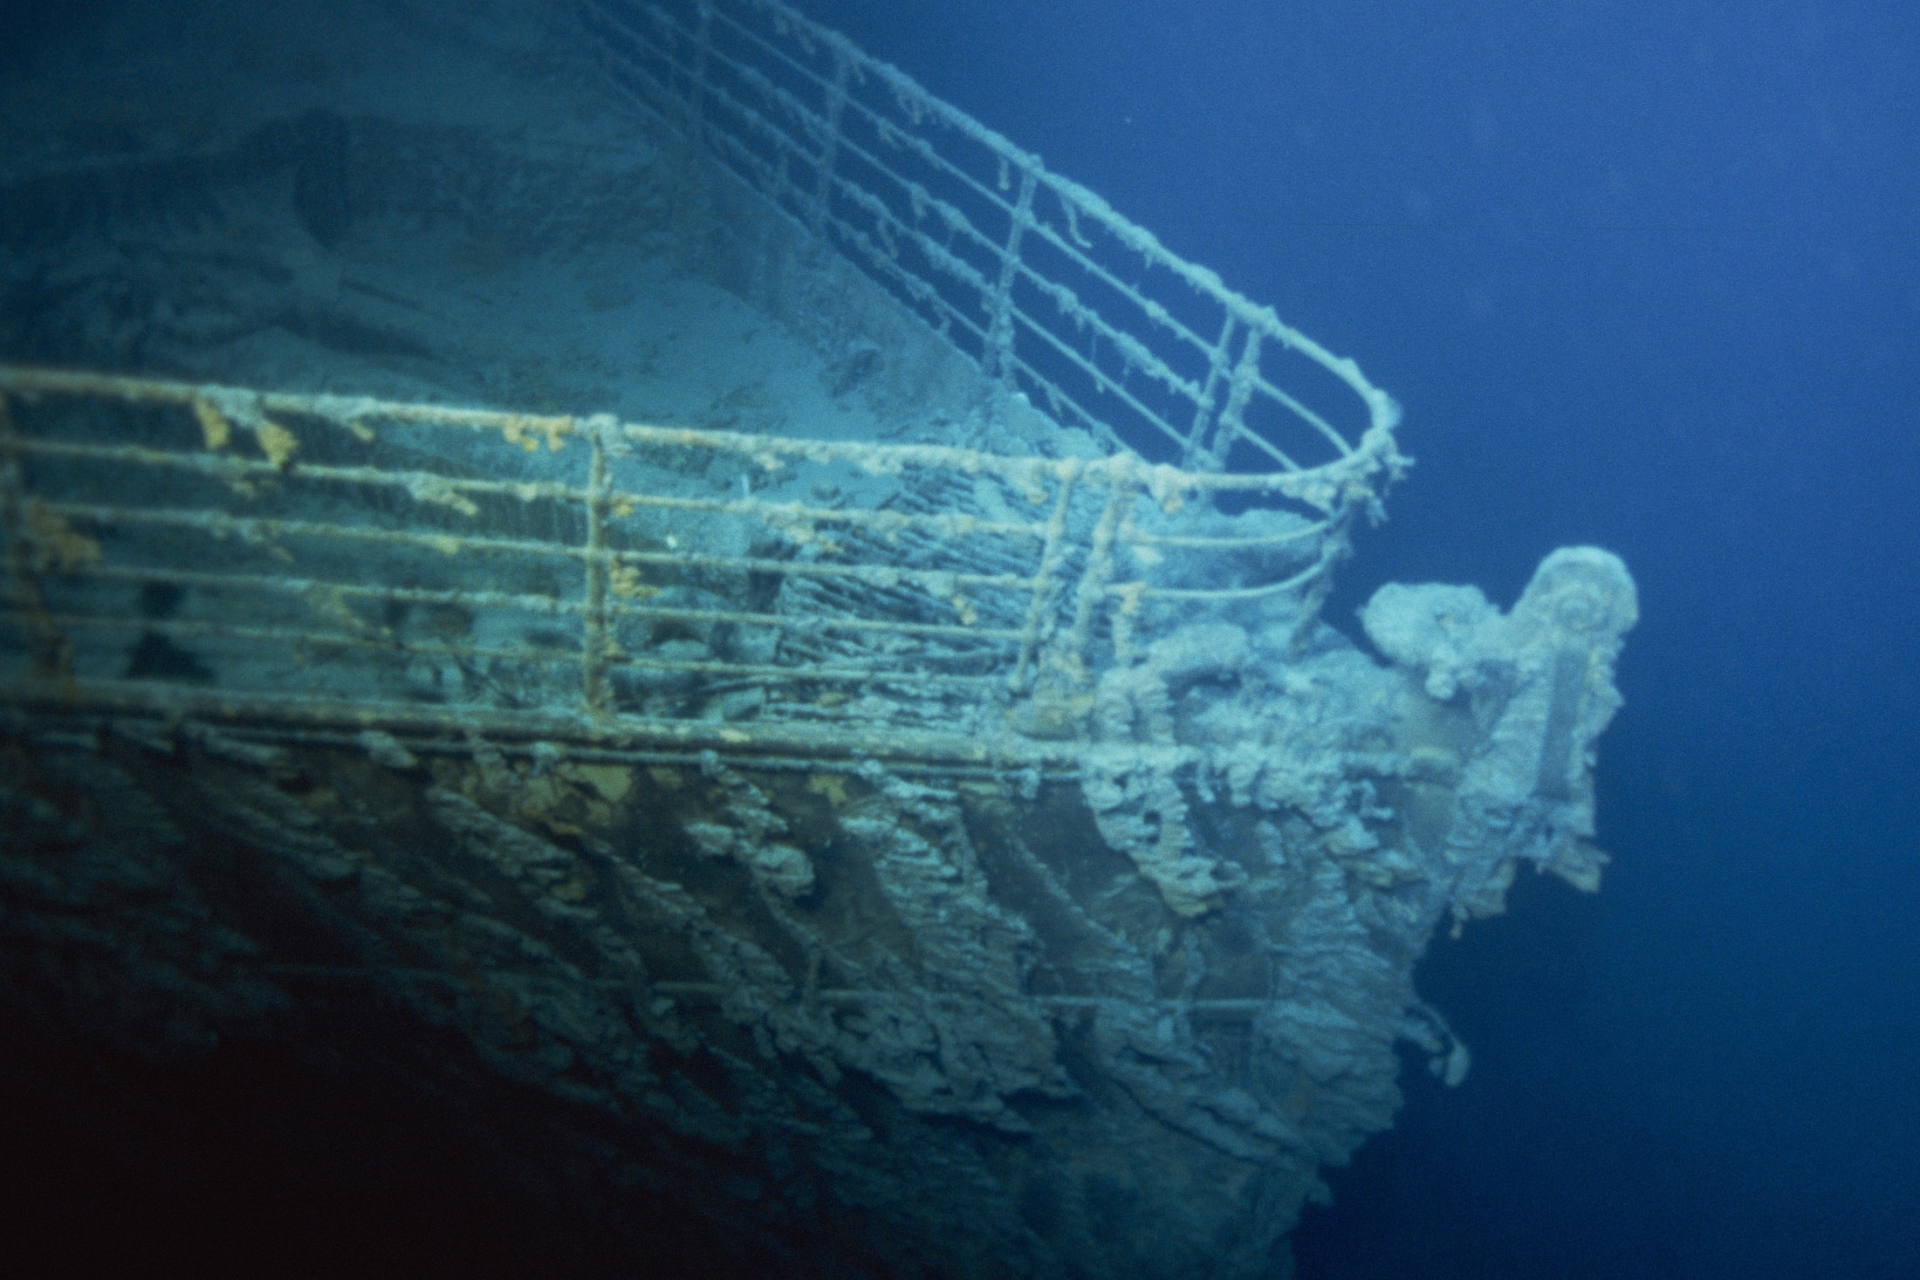 Một số hình ảnh của xác tàu Titanic ở độ sâu 3,8 km dưới đáy biển ở phía bắc Đại Tây Dương được chụp vào năm 1996. Ảnh: Xavier